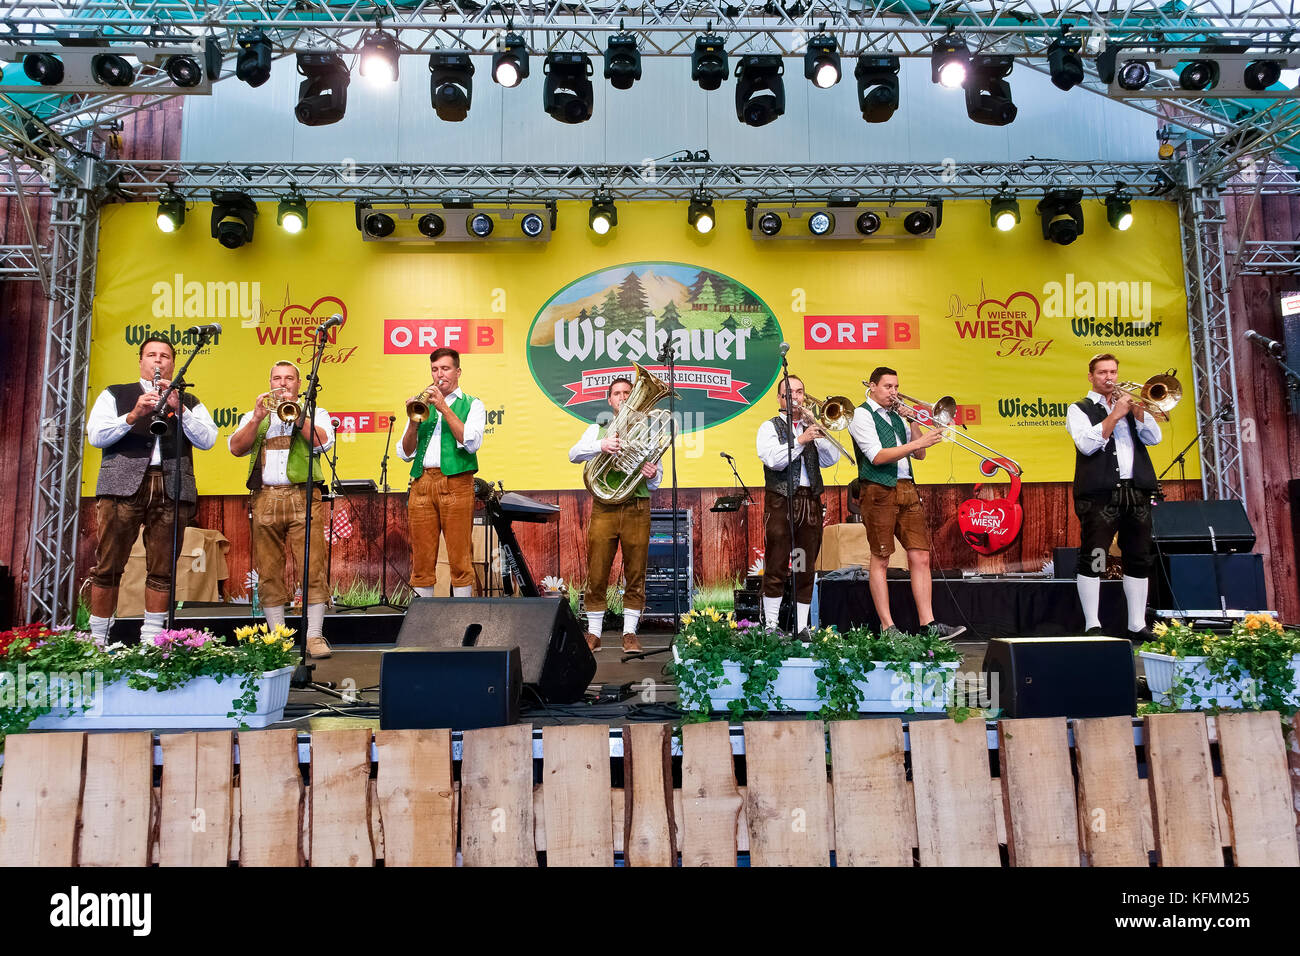 Oktoberfest, Festival de la bière de Vienne au parc d'attractions Prater. Groupe de musique populaire typique, portant dirndl, sur scène. Tente à bière. Vienne, Vienne, Autriche Banque D'Images